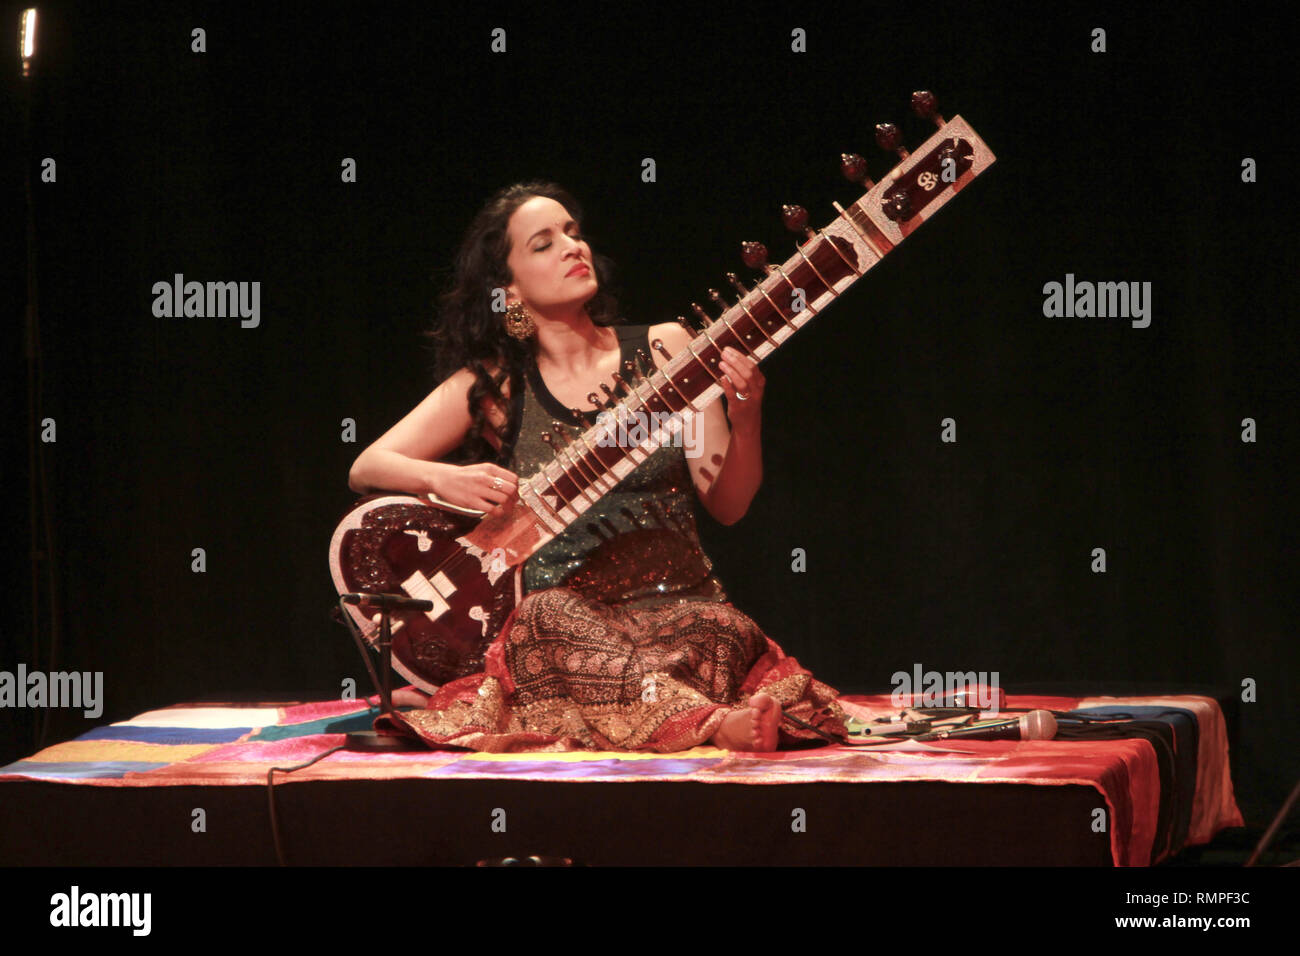 Musiker Anoushka Shankar wird angezeigt, während eine "Live"-Konzert aussehen. Stockfoto